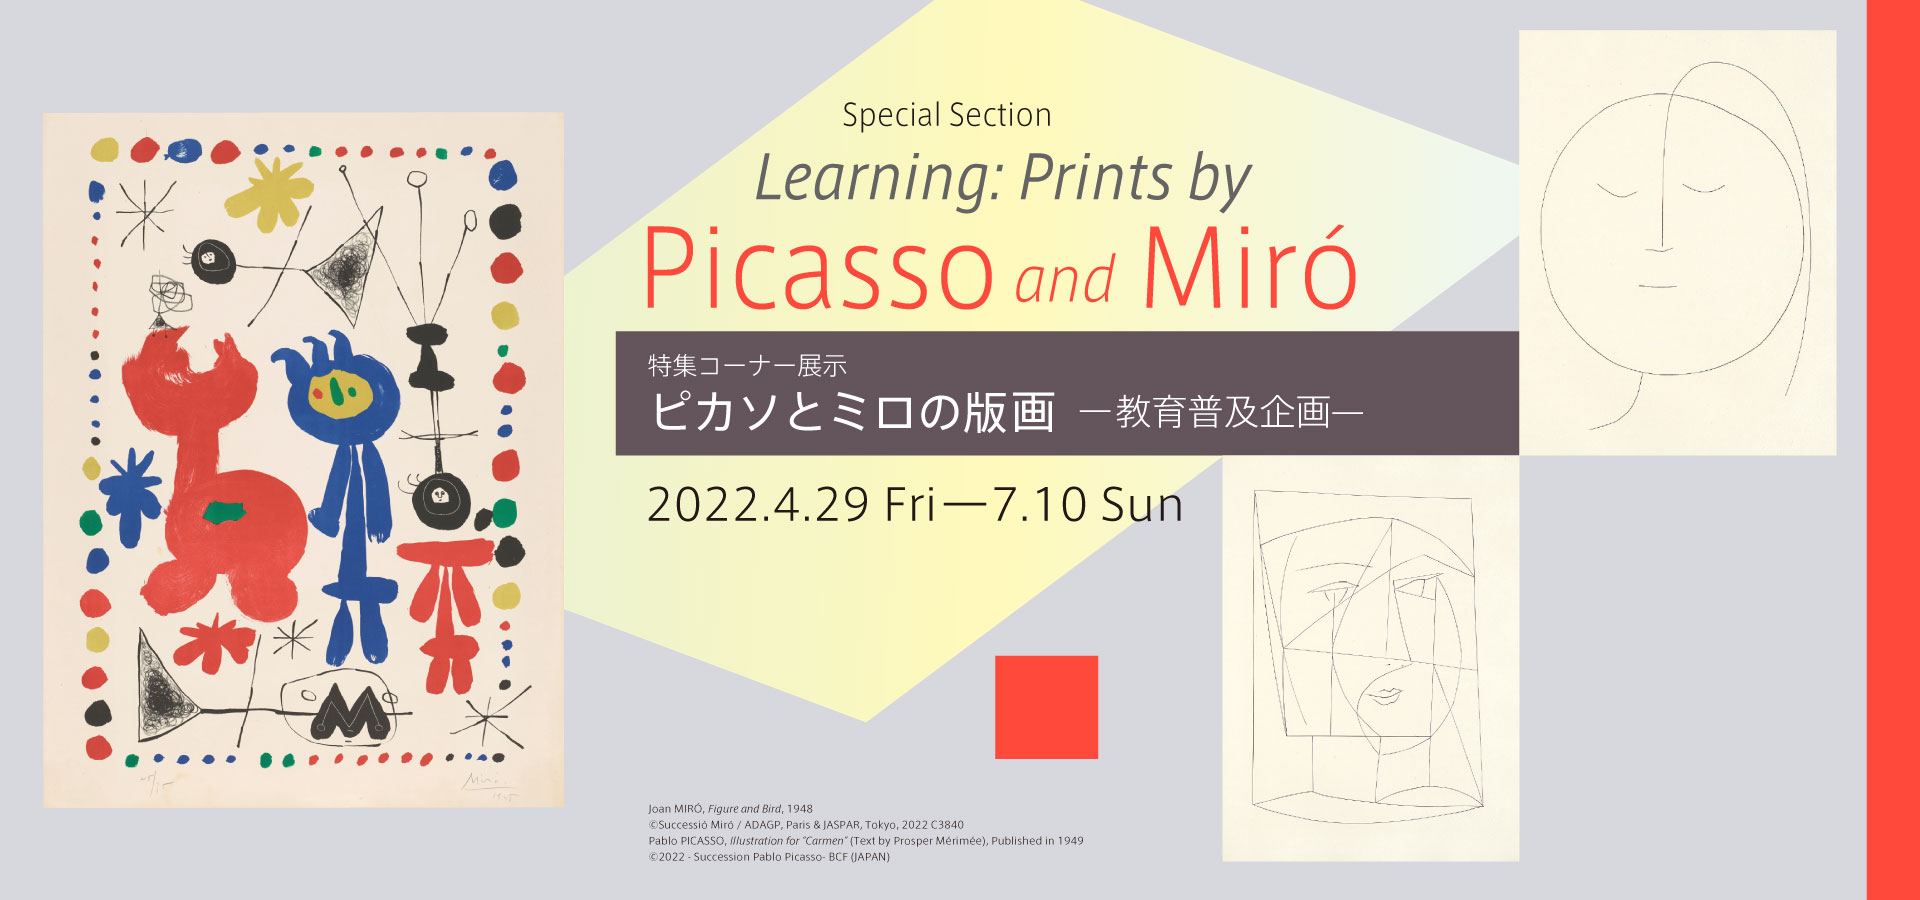 石橋財団コレクション選　特集コーナー展示　ピカソとミロの版画　—教育普及企画—